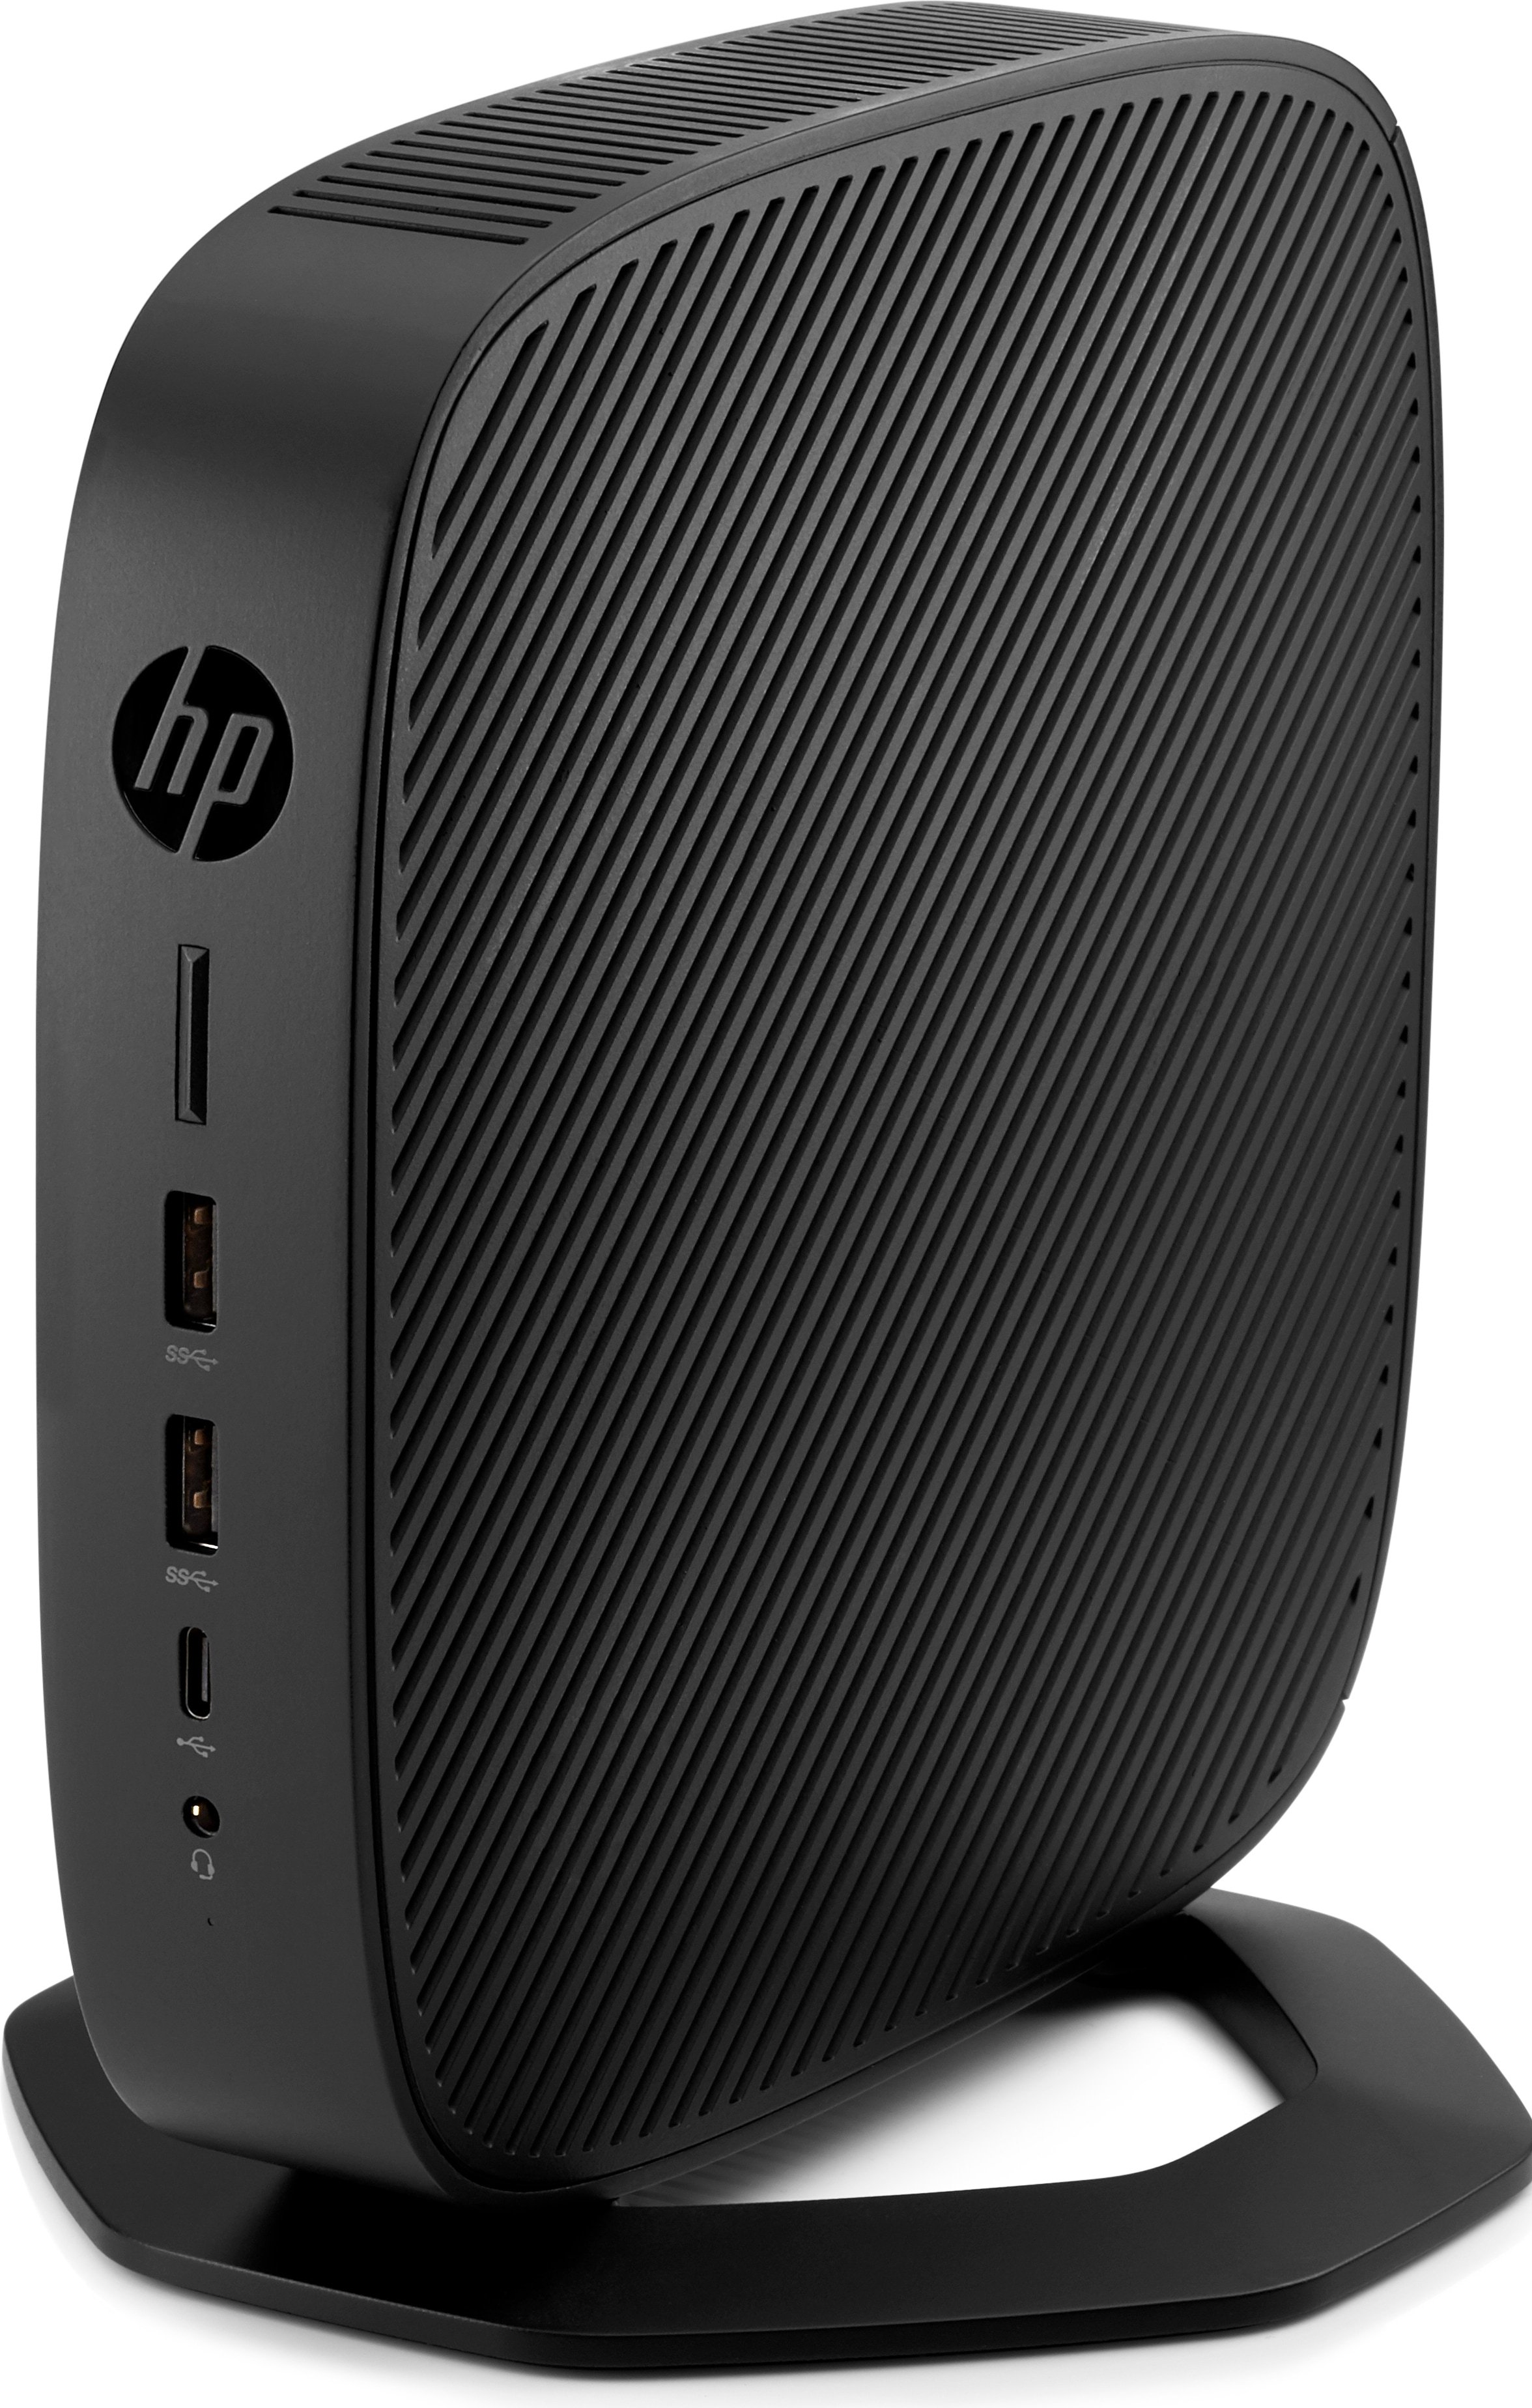 HP t640 - Thin client